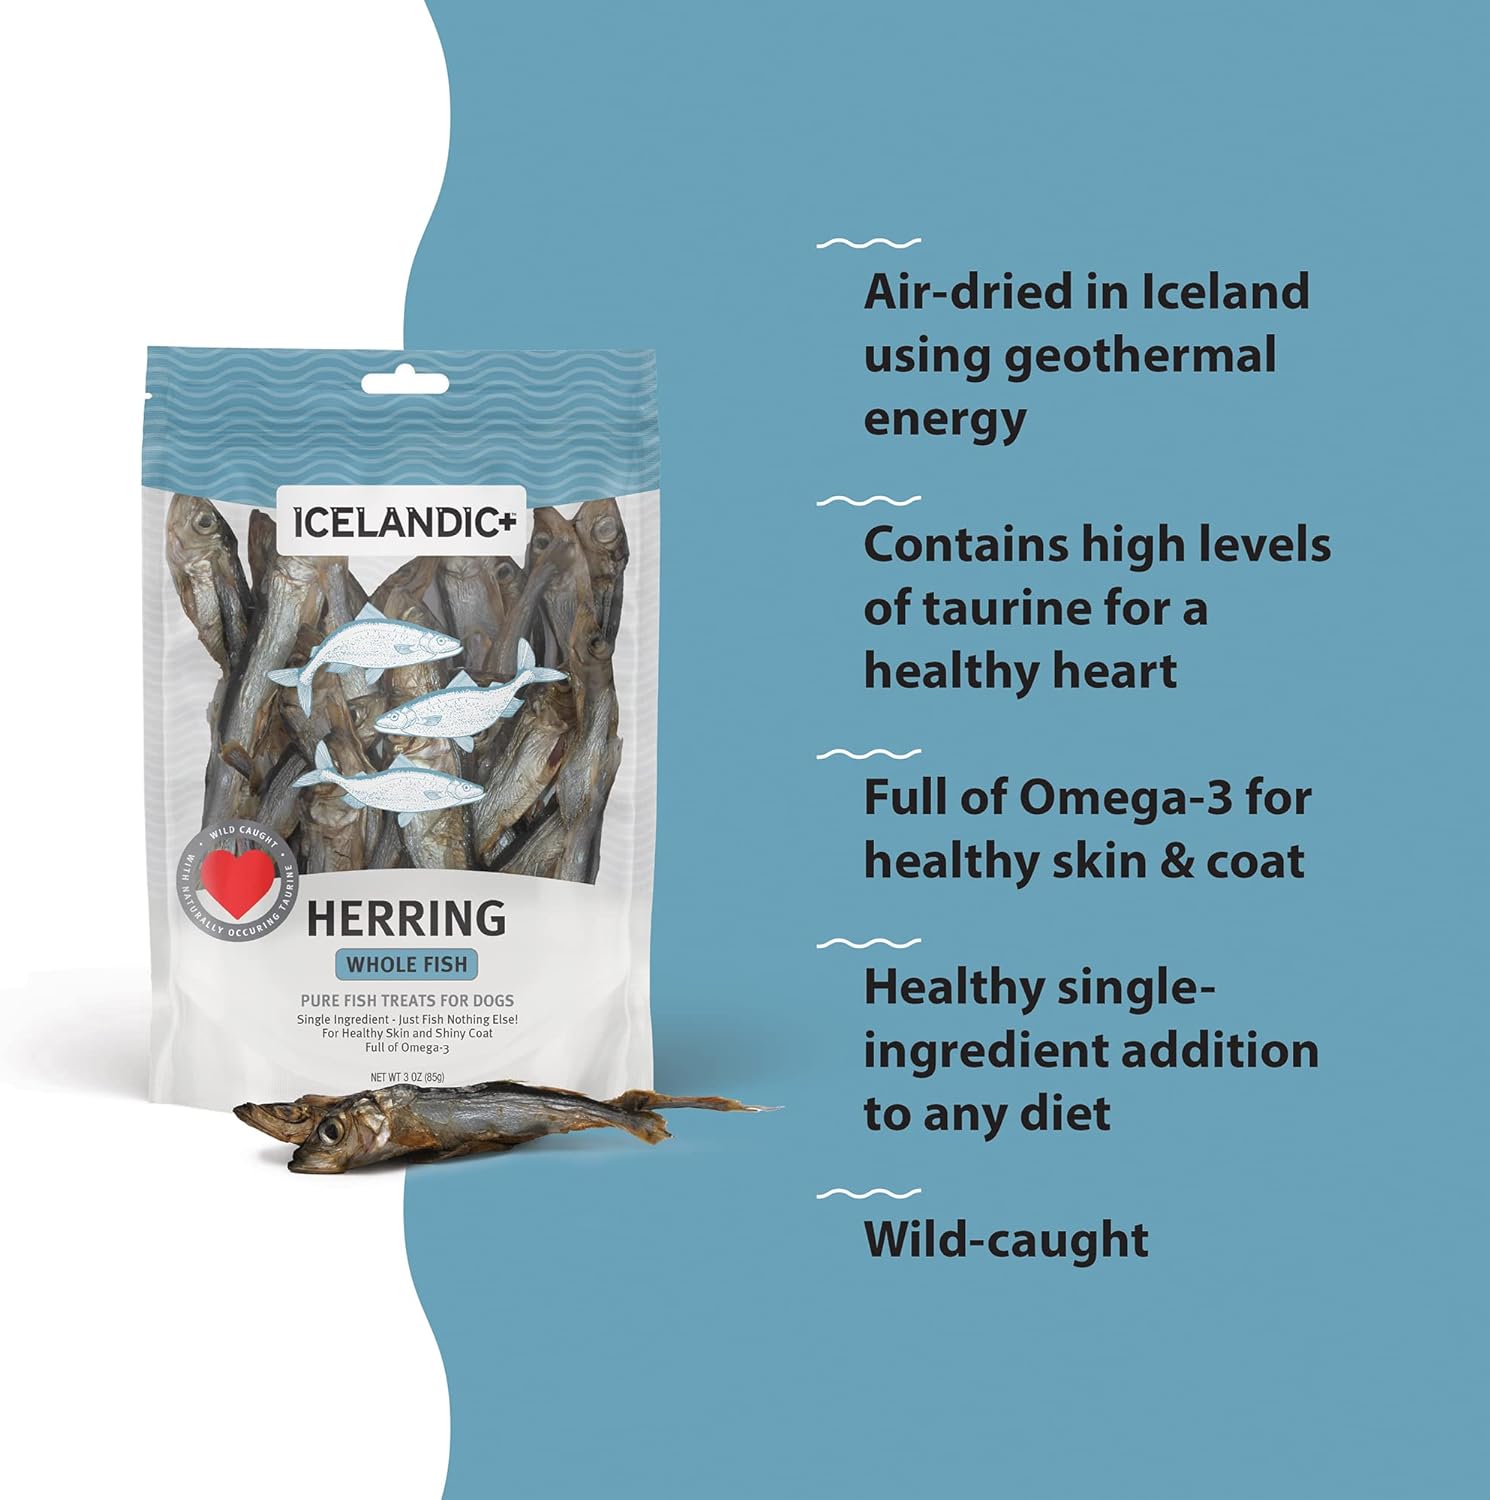 Icelandic+ Herring Whole Fish Dog Treat 3-oz Bag